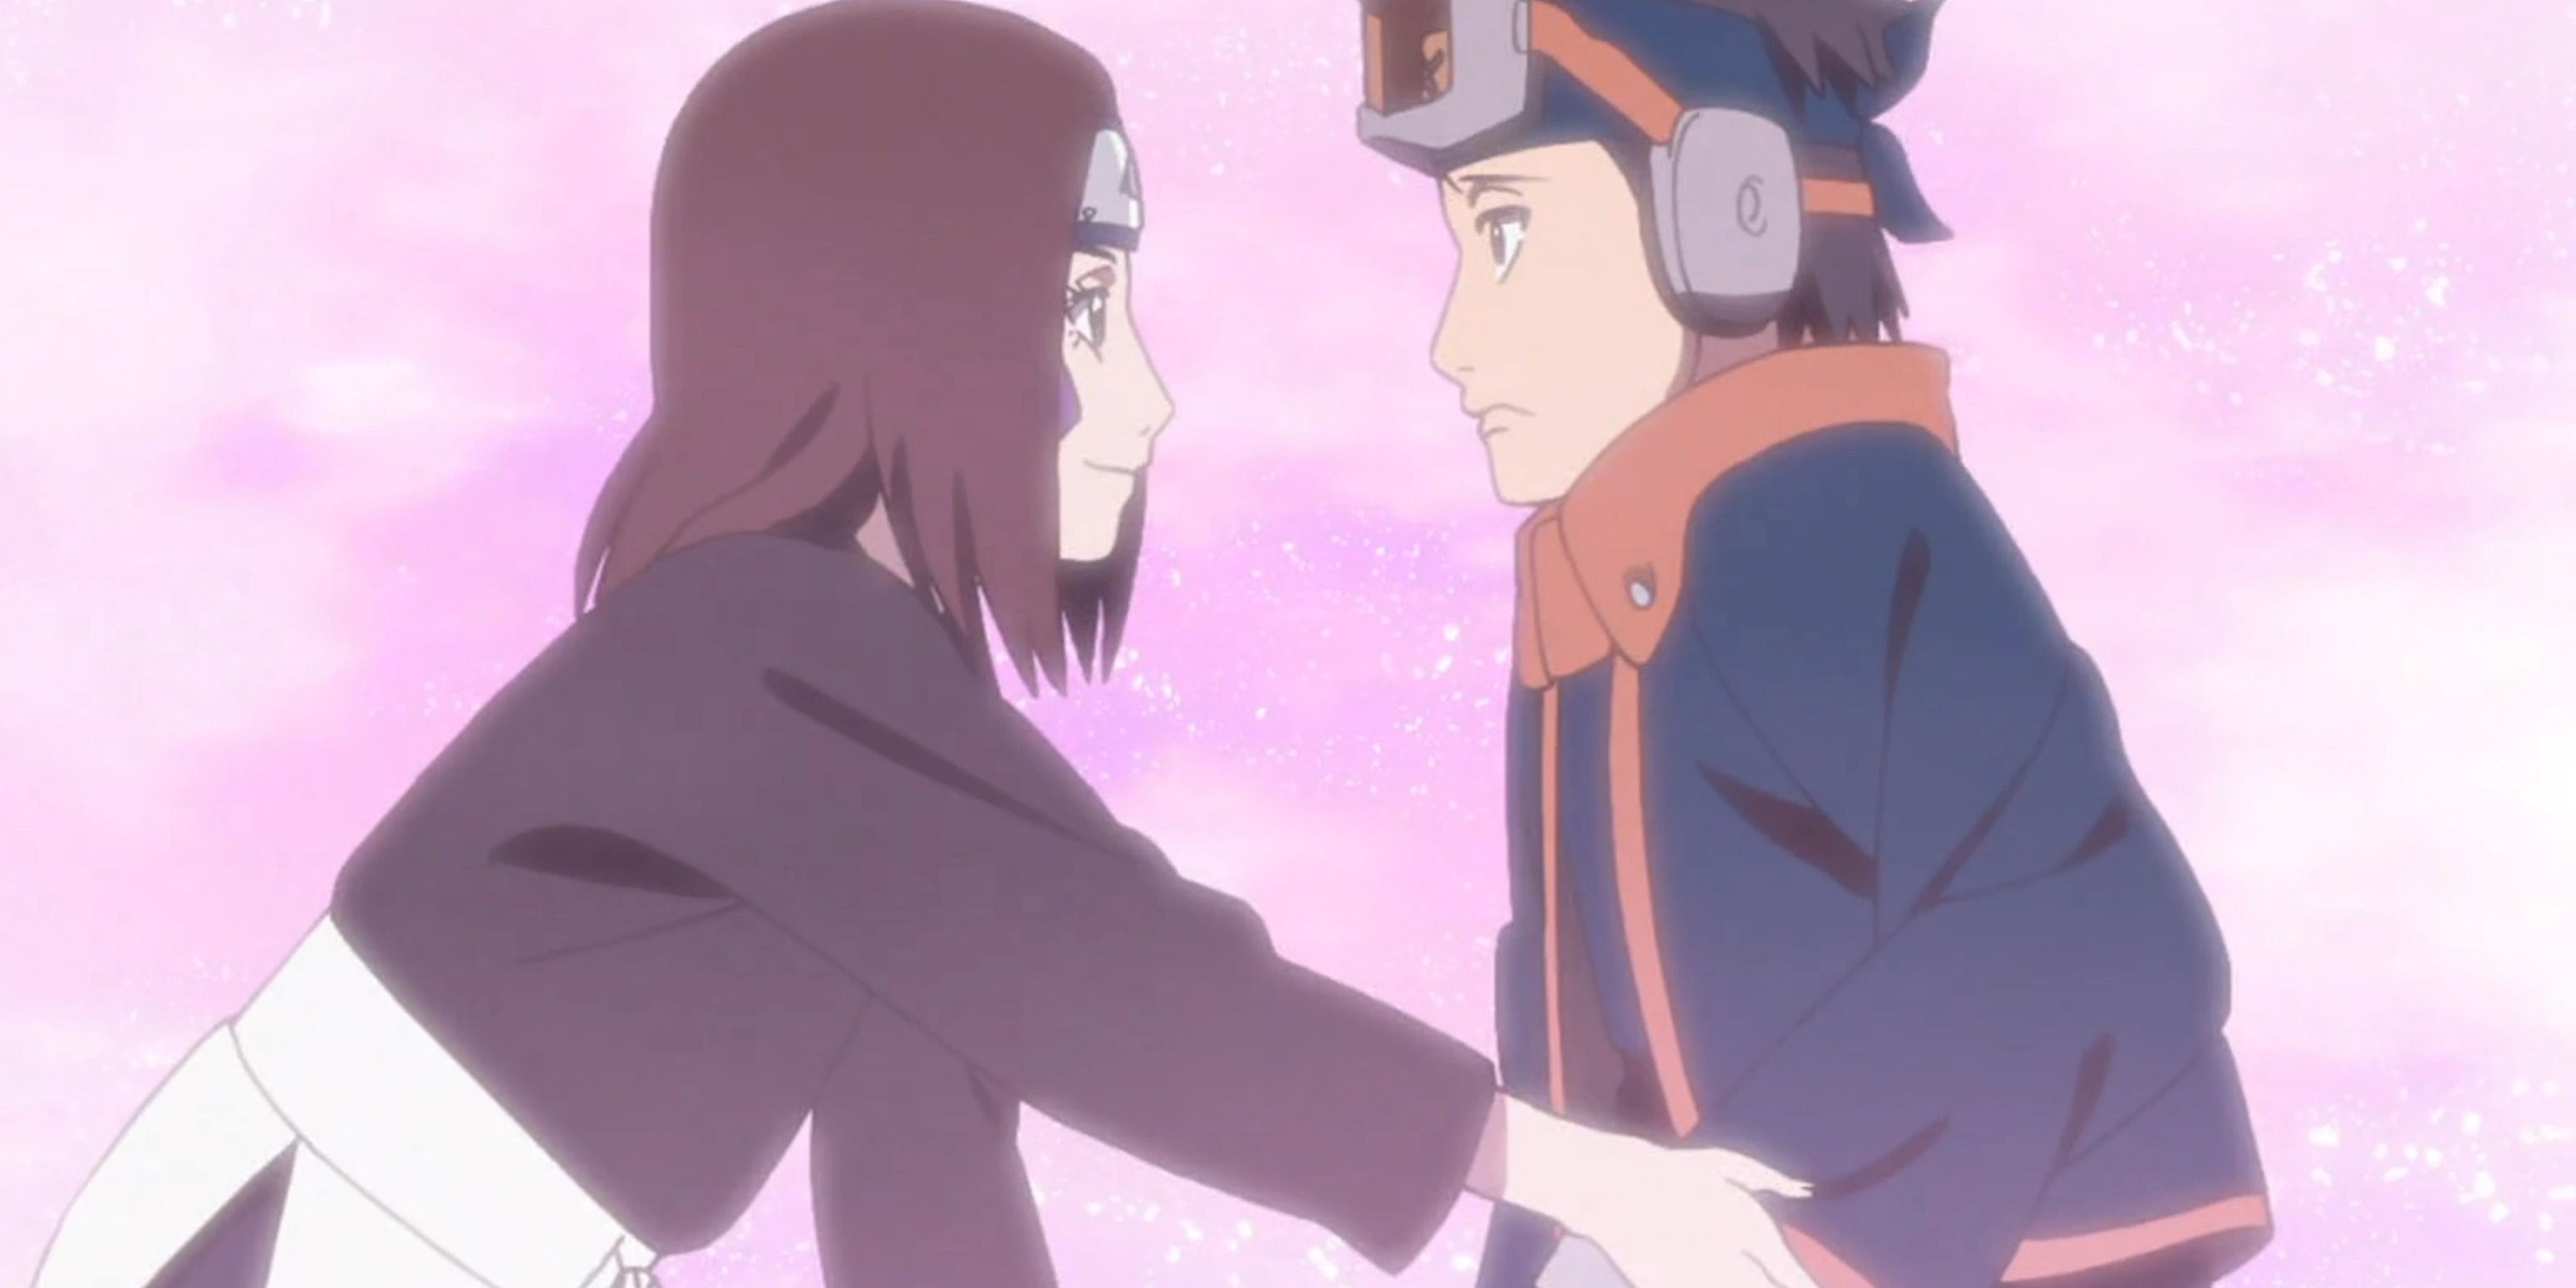 Rin reaches for Obito's hand in Naruto Shippuden.